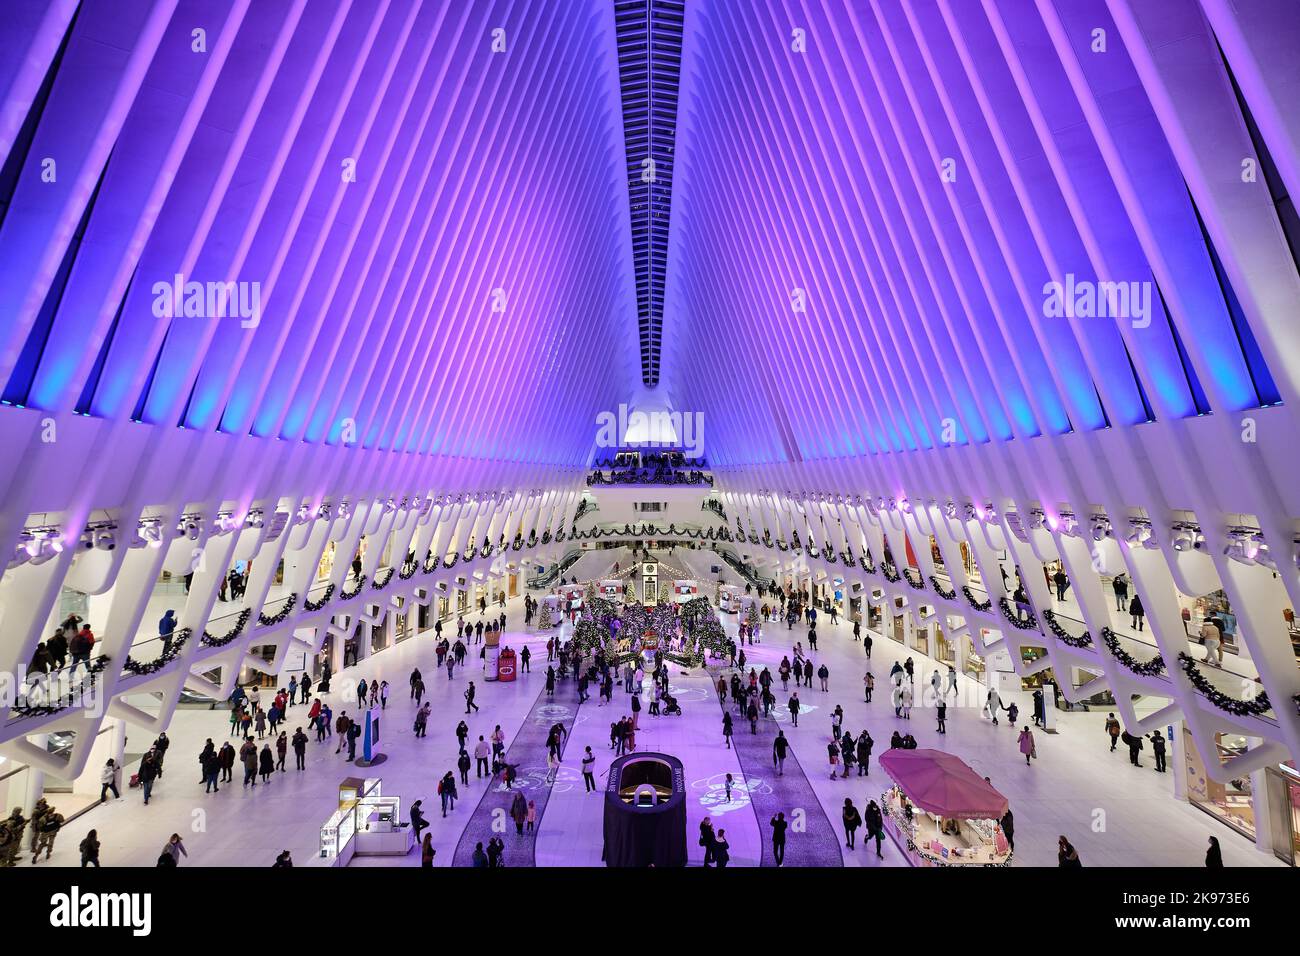 Eine wunderschöne Aussicht auf das Innere des Oculus in Manhattan, New York City, mit violetten Lichtern, die die riesige Halle erleuchten Stockfoto